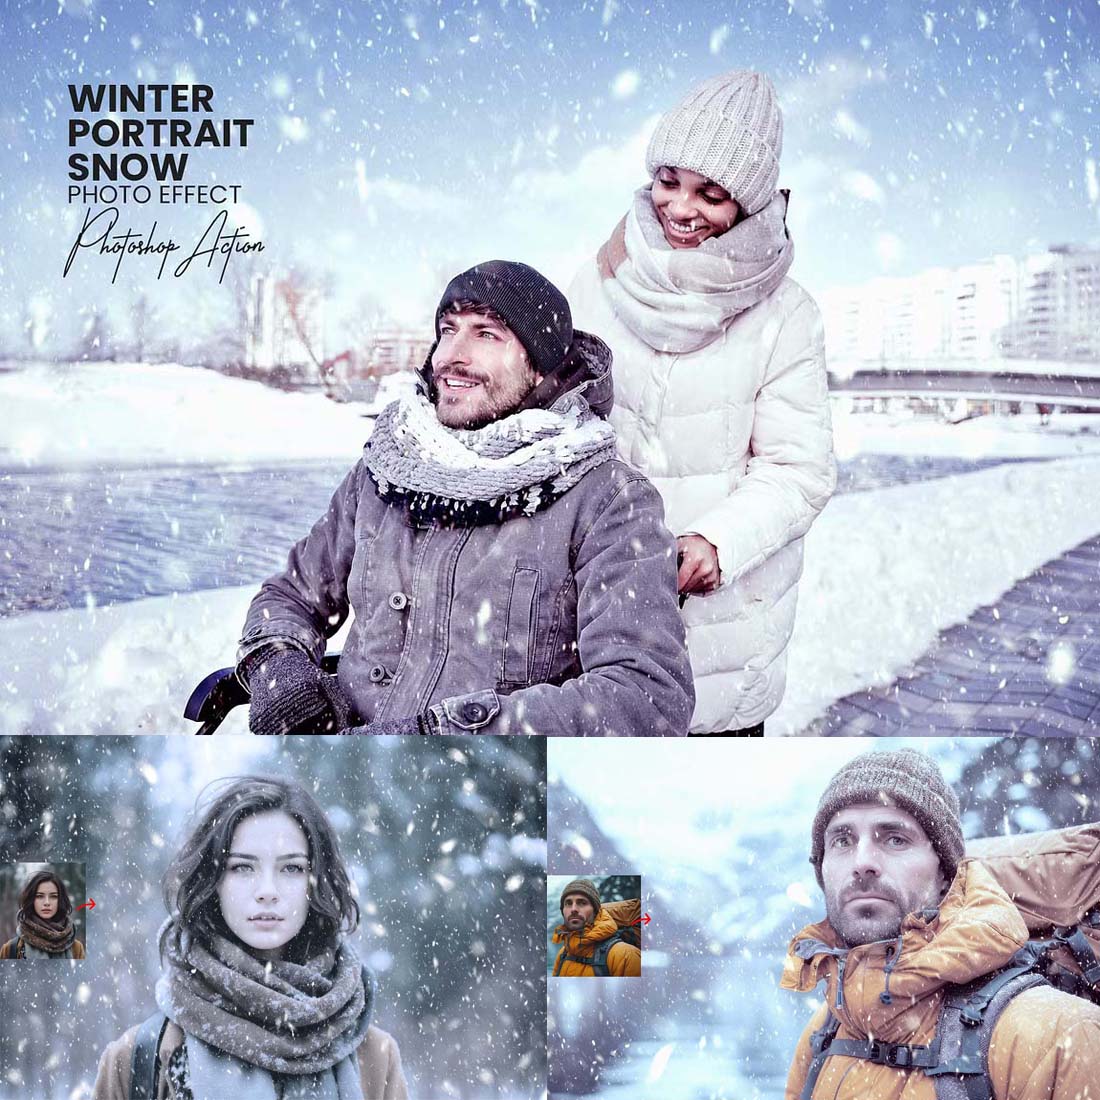 Winter Portrait Snow Effect cover image.